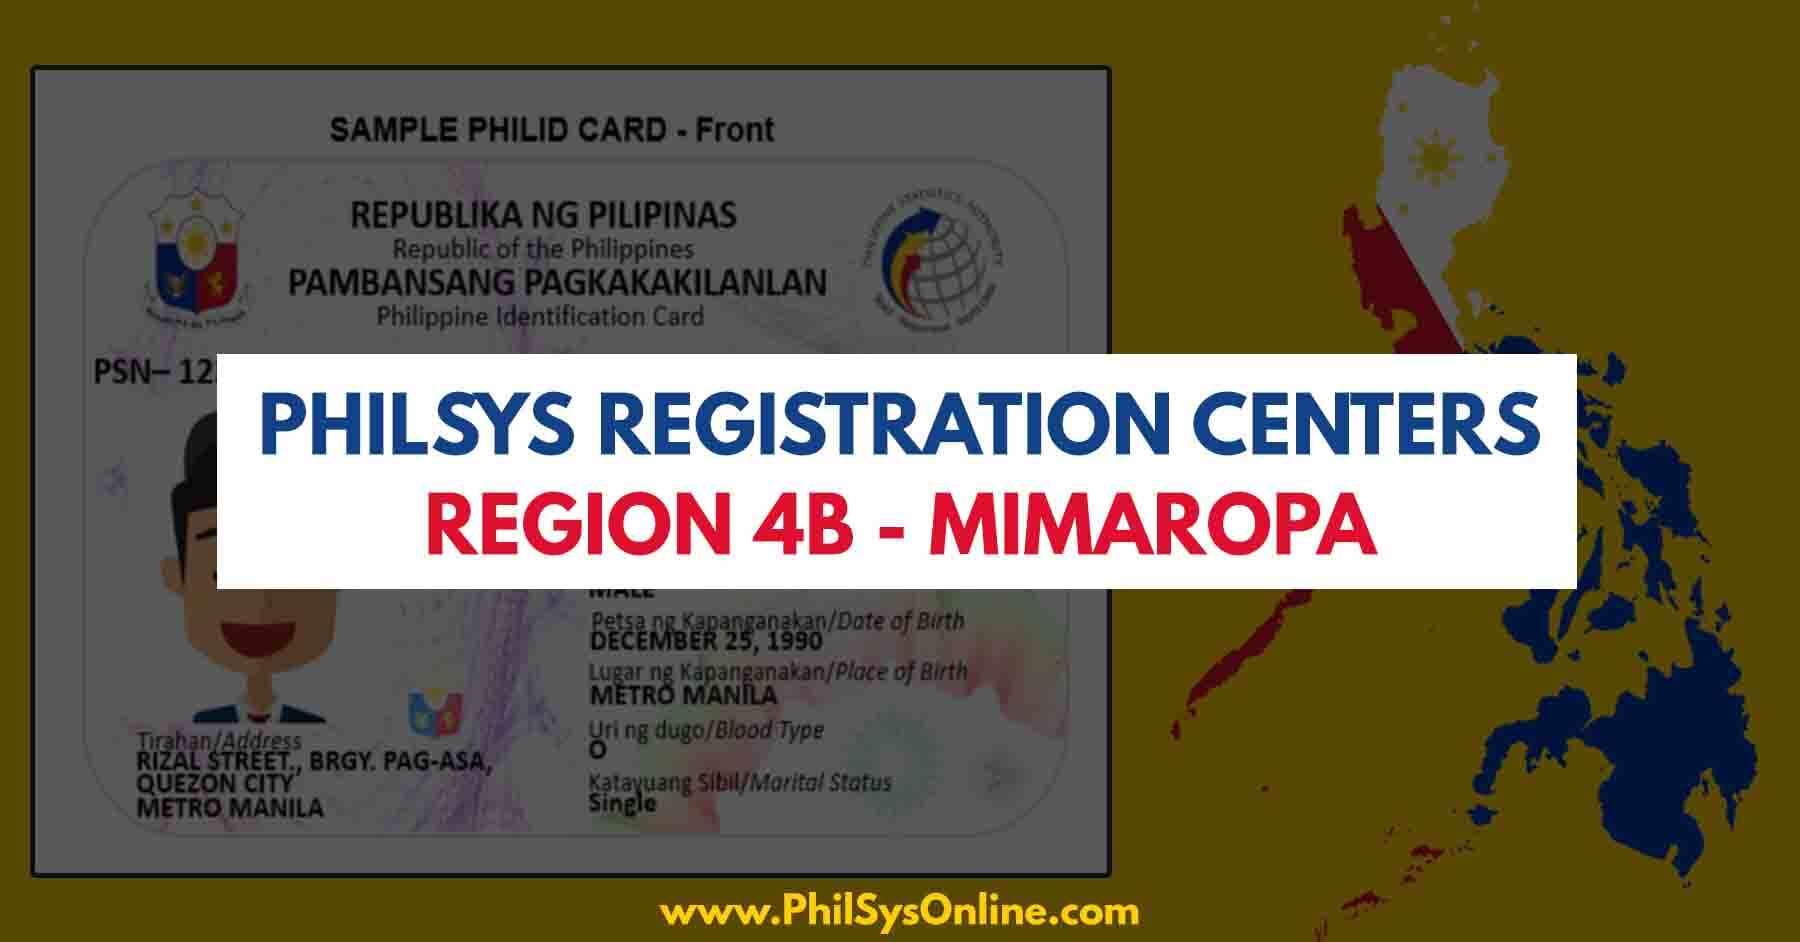 philsys registration centers region 4b mimaropa philippines